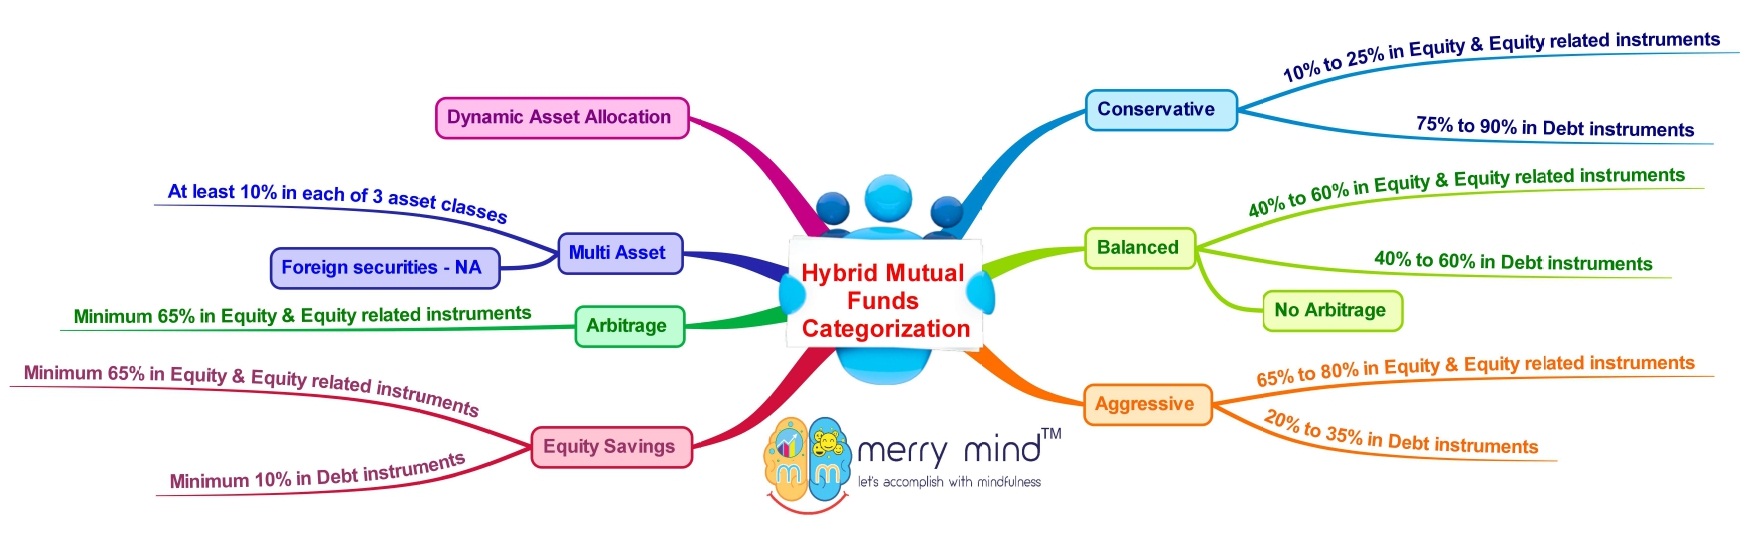 Hybrid Mutual Funds